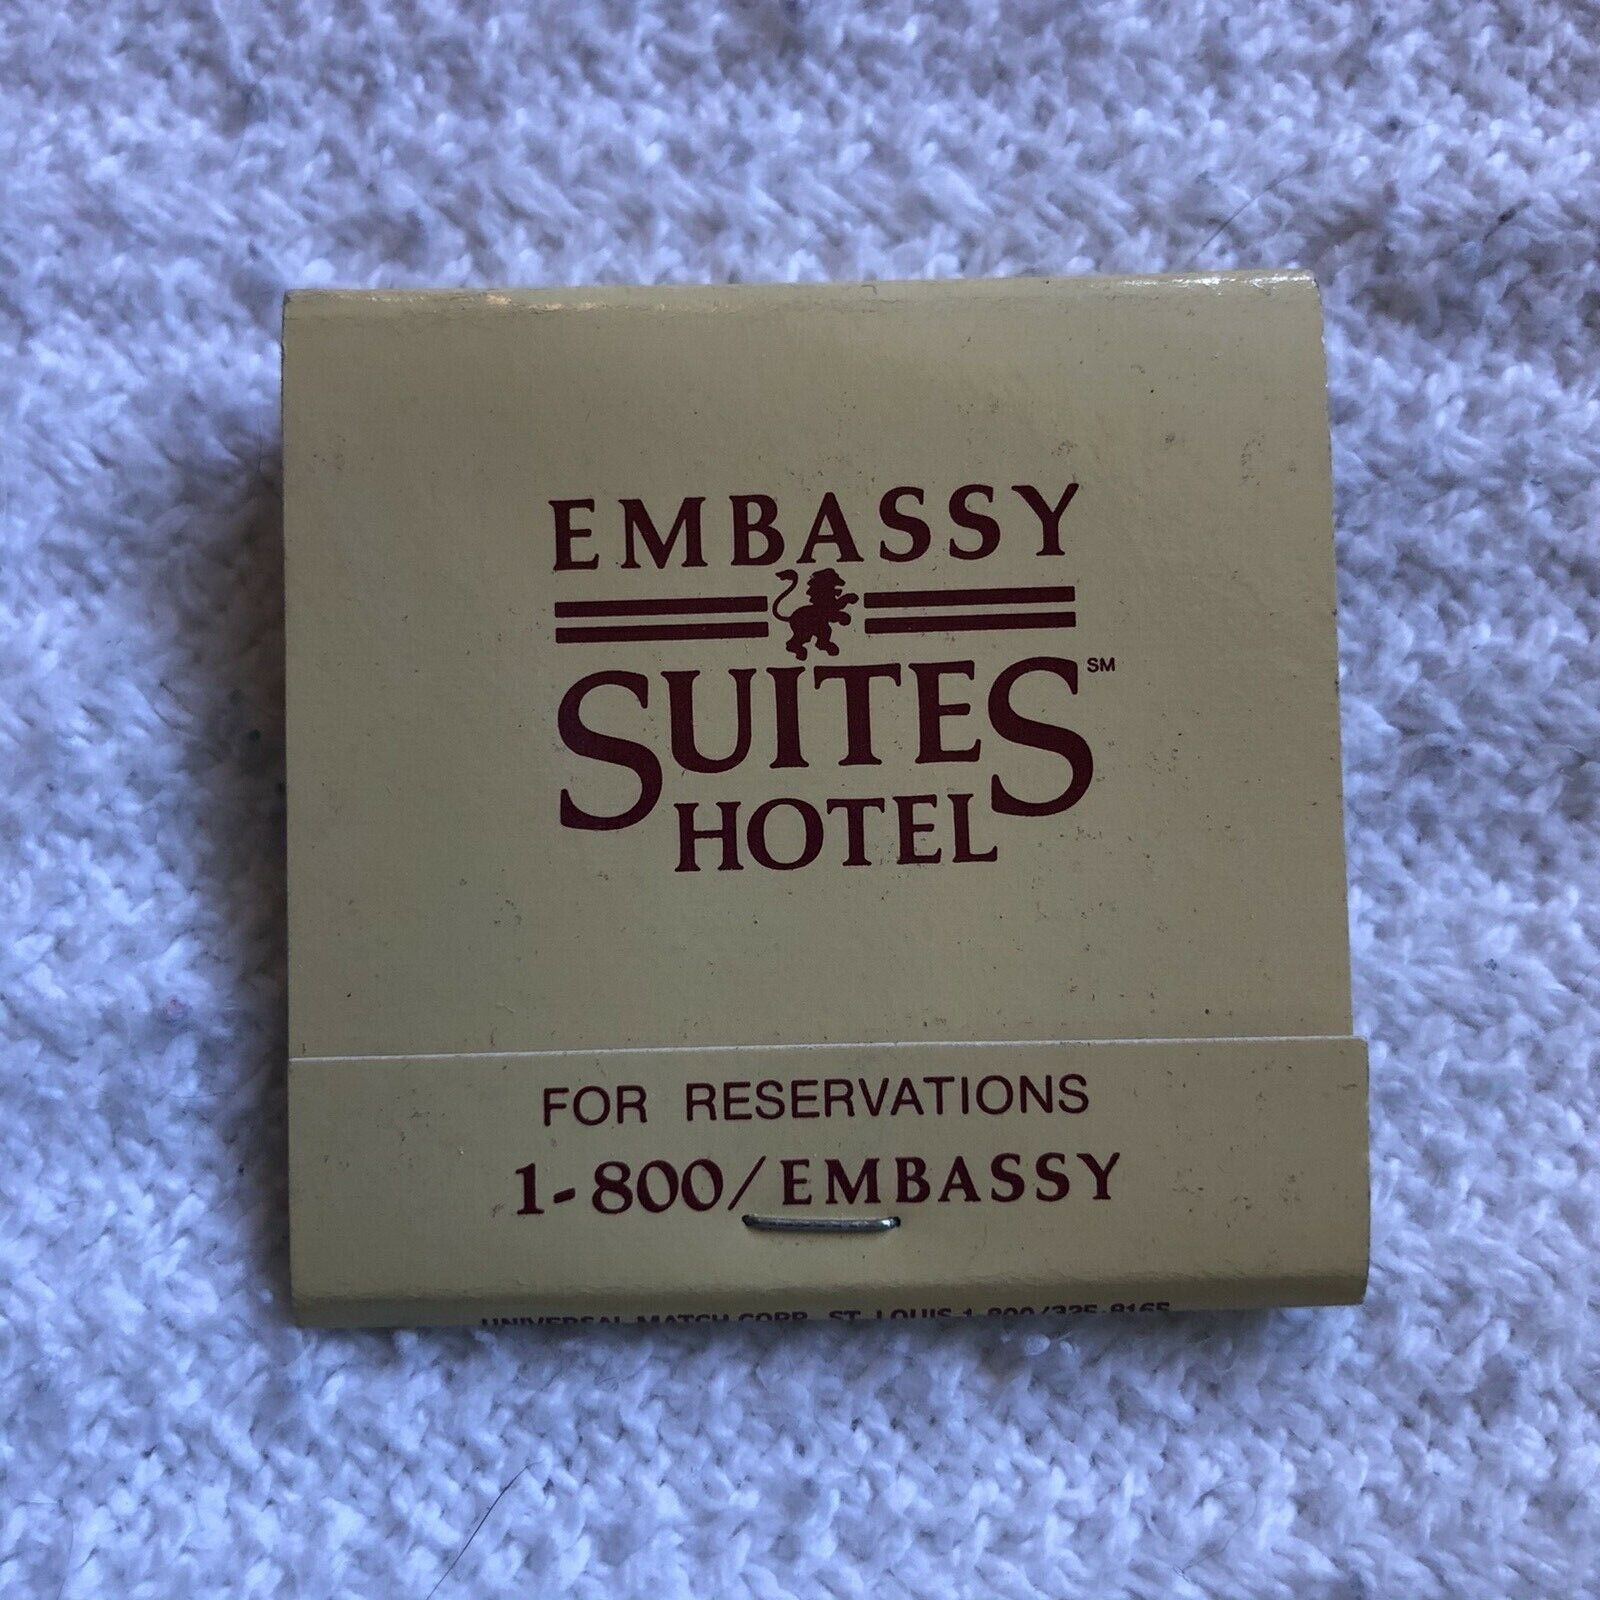 Embassy Suites Hotel Vintage Matchbook FULL UNSTRUCK EUC